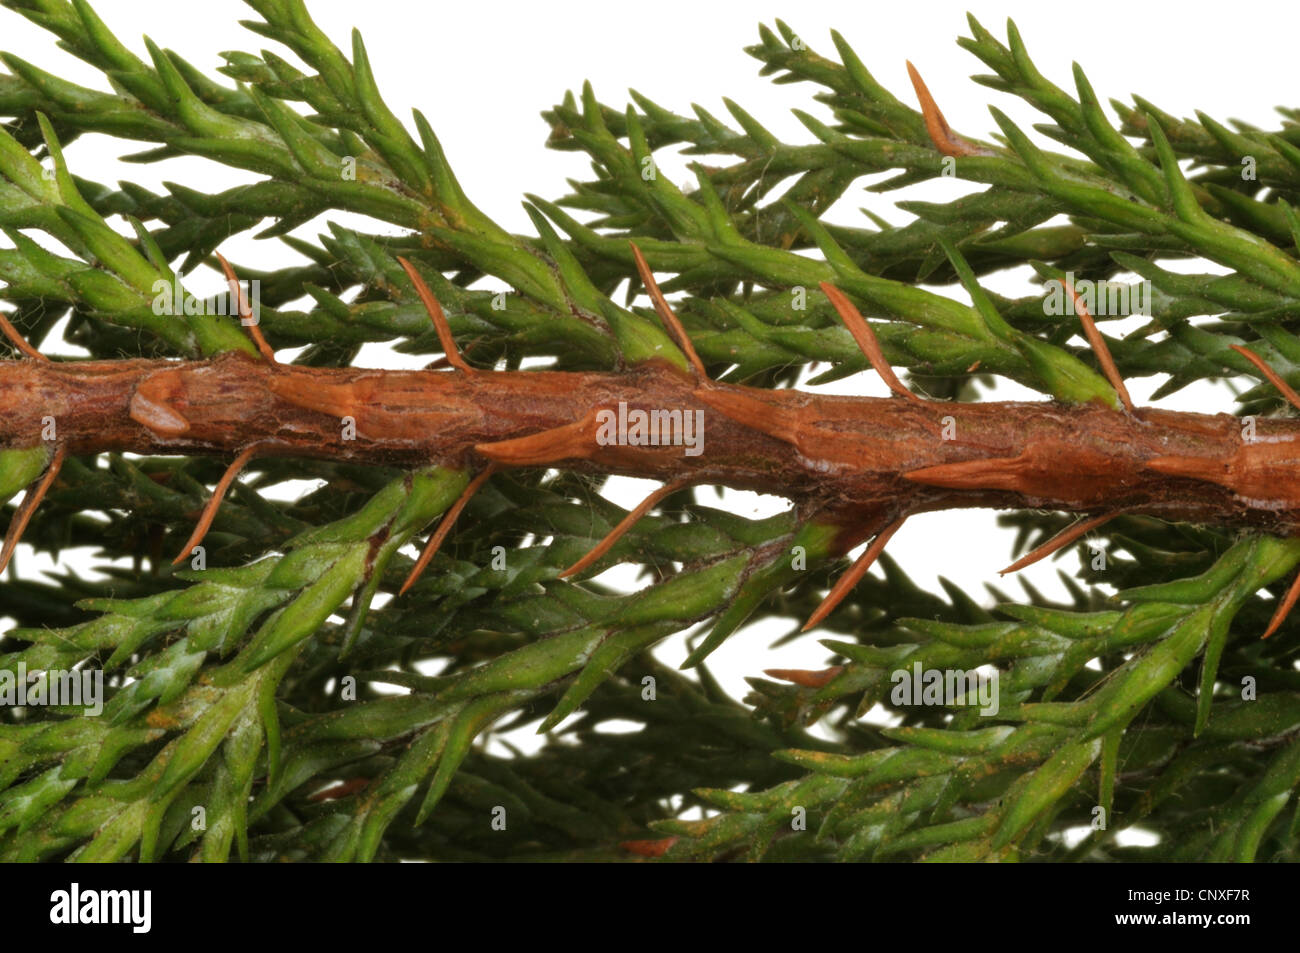 Lawson cypress, Port Orford cedar (Chamaecyparis lawsoniana), branch of a Plumosa cultivar Stock Photo